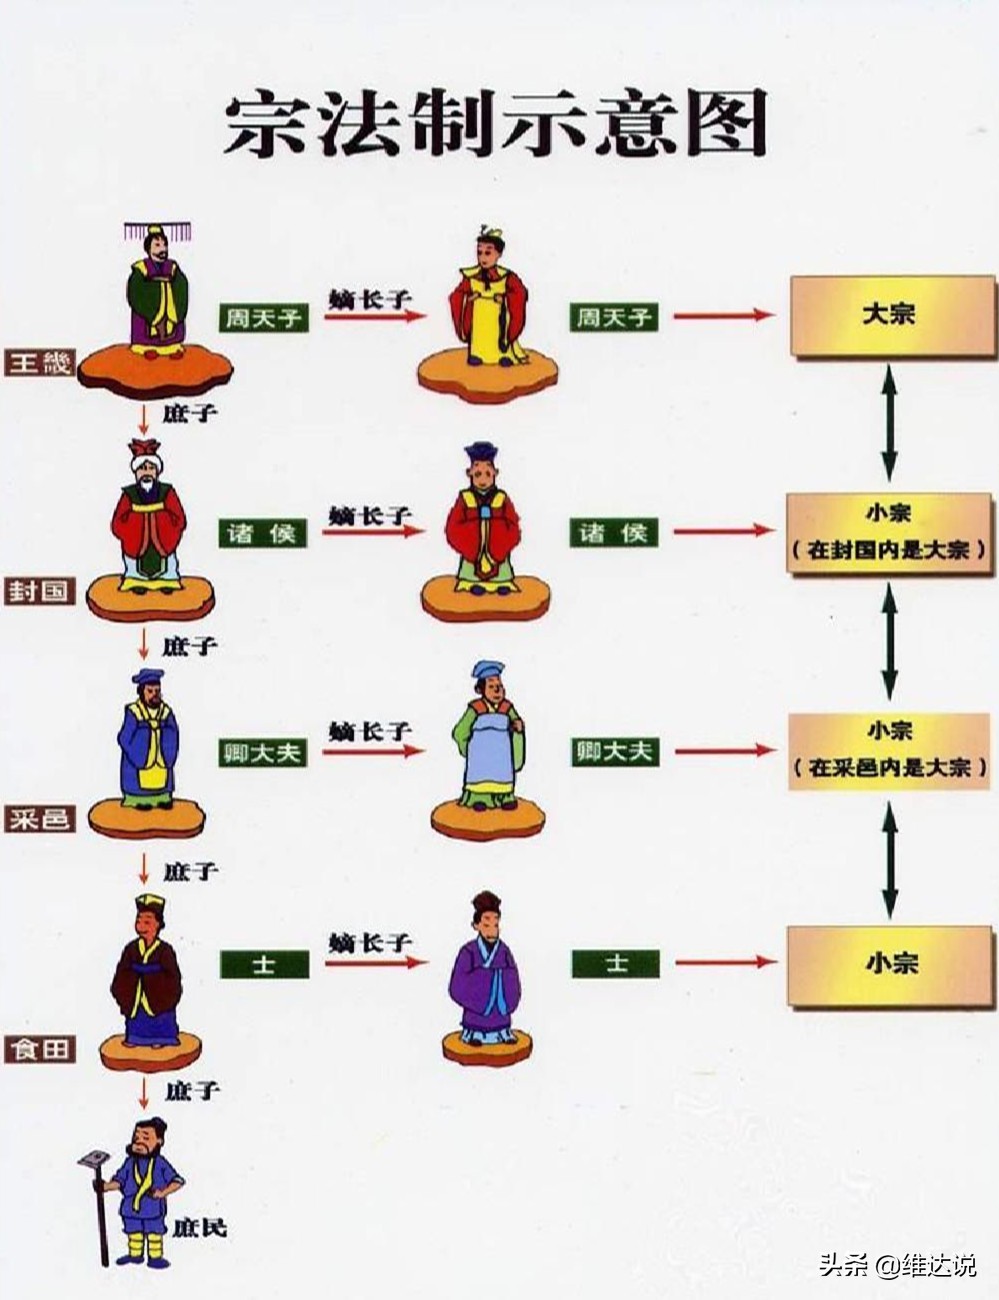 中国式“啃老”，心安理得的背后是宗法制衍生的文化观念在作祟